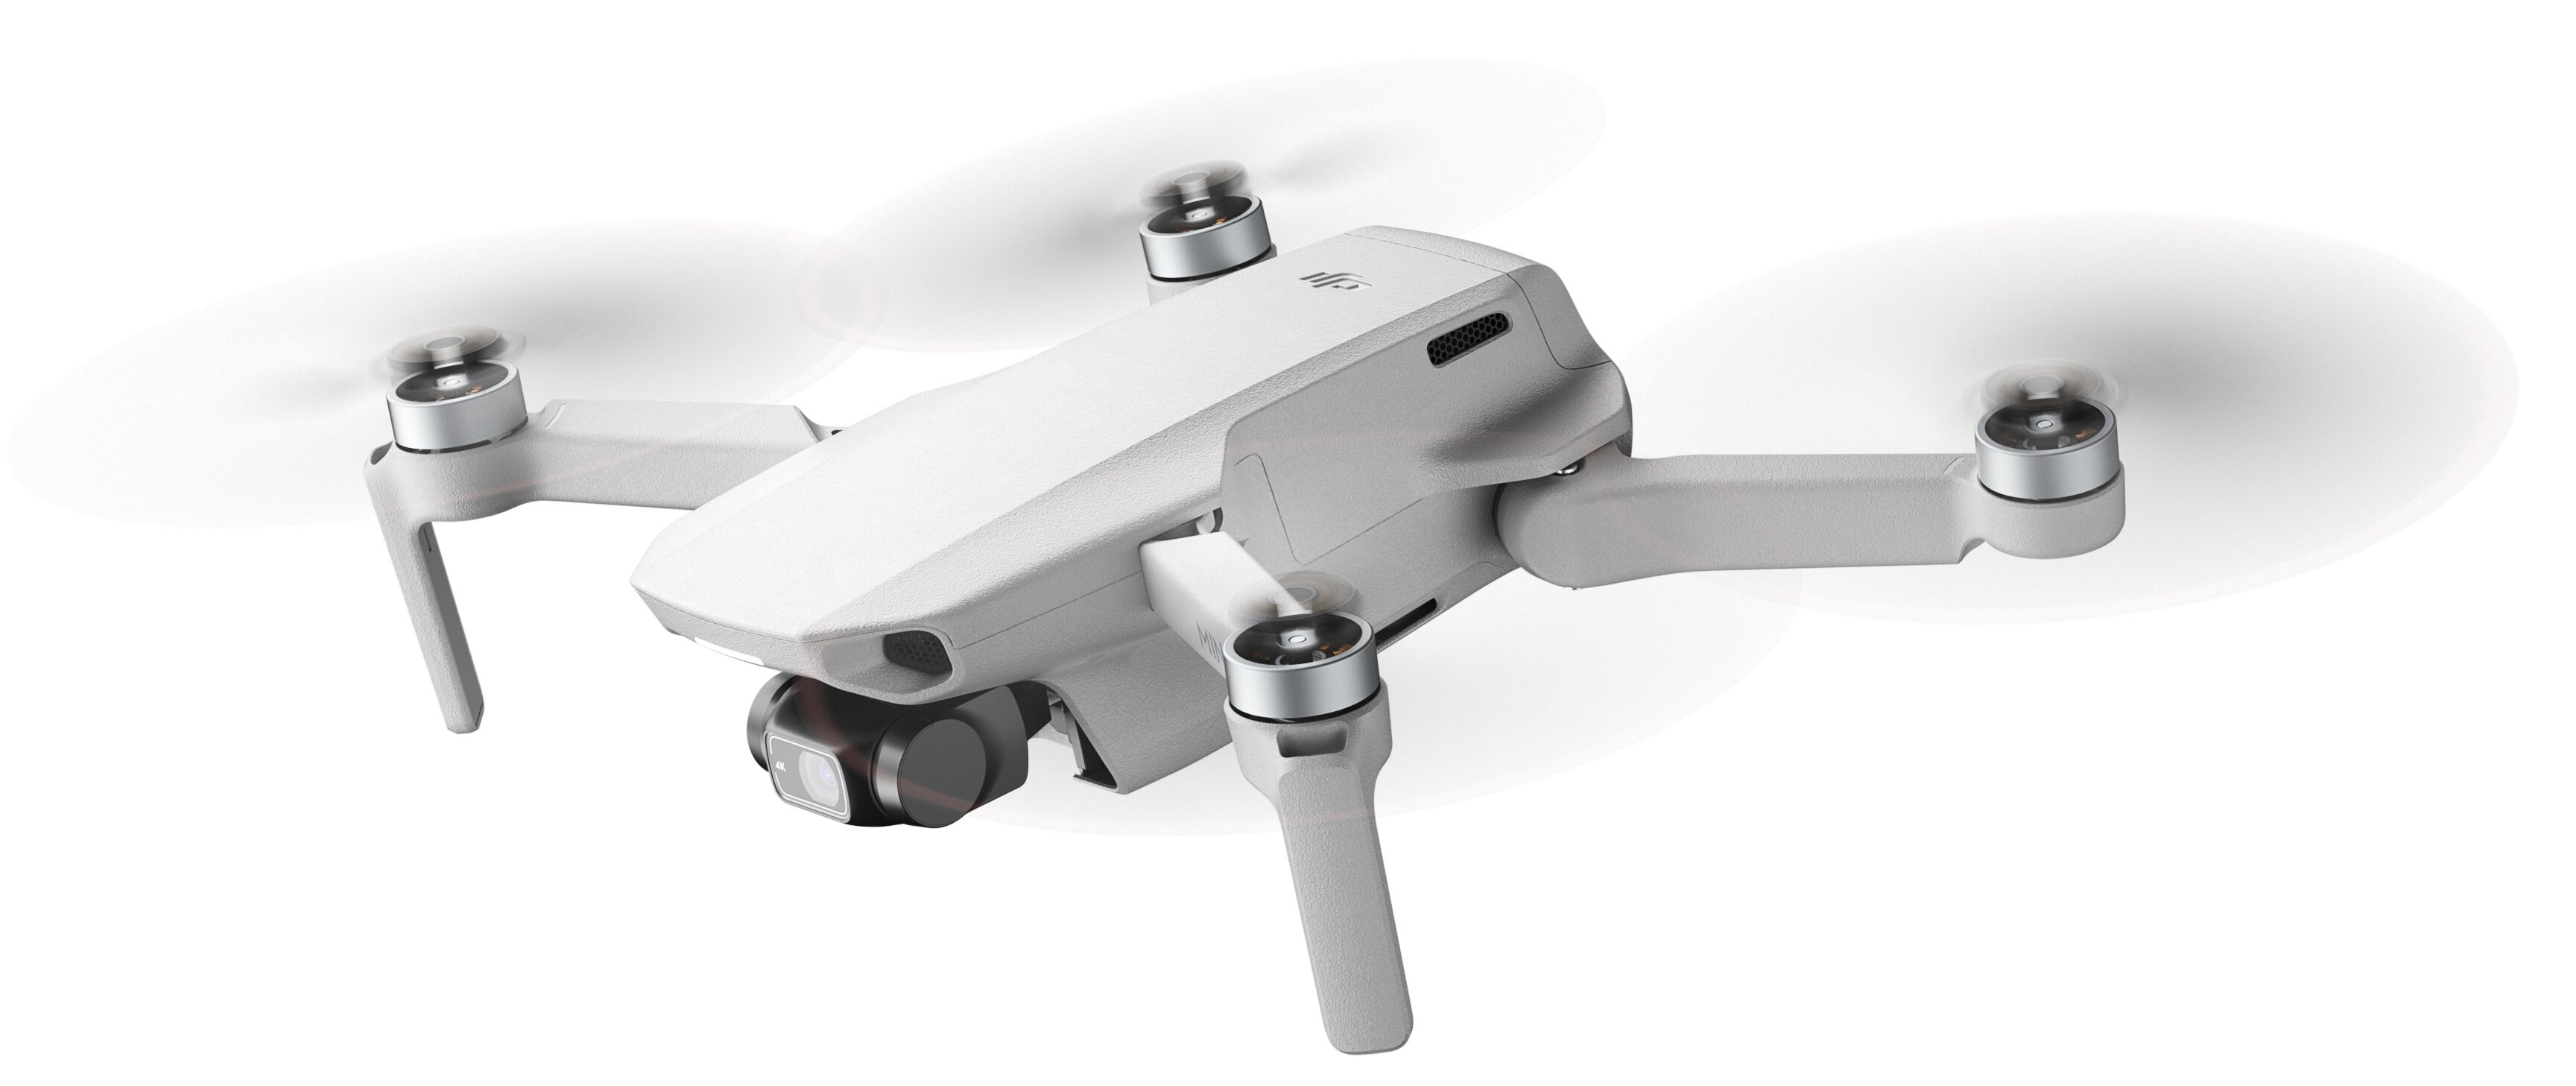 DJI Mini 2 (Mavic Mini 2) Dron - niskie ceny i opinie w Media Expert